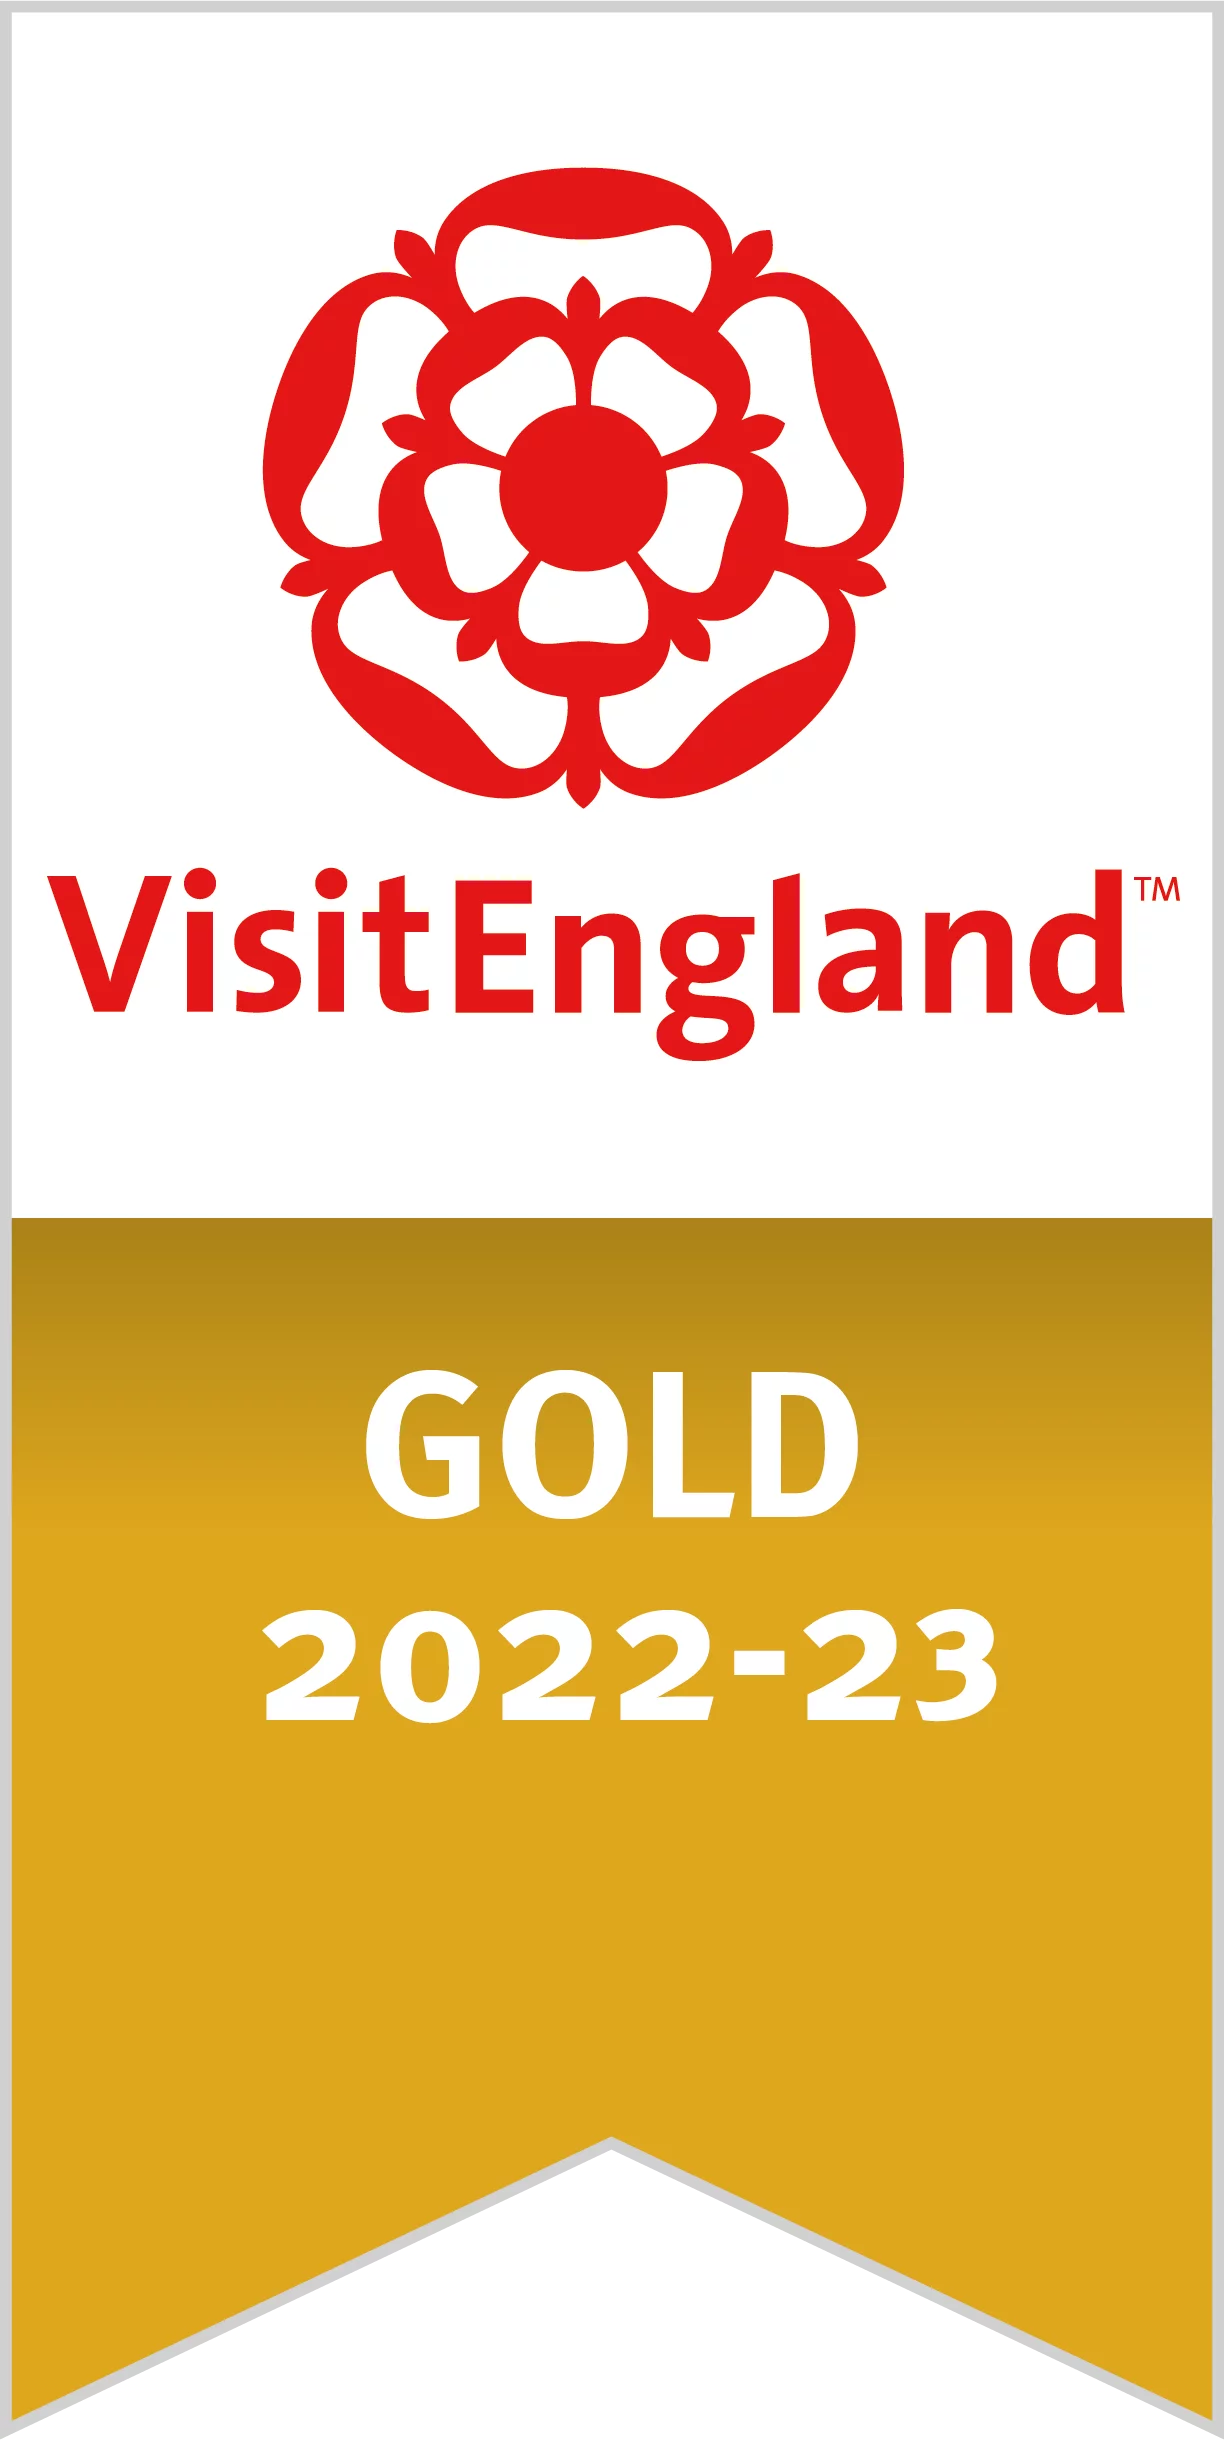 Visit England logo